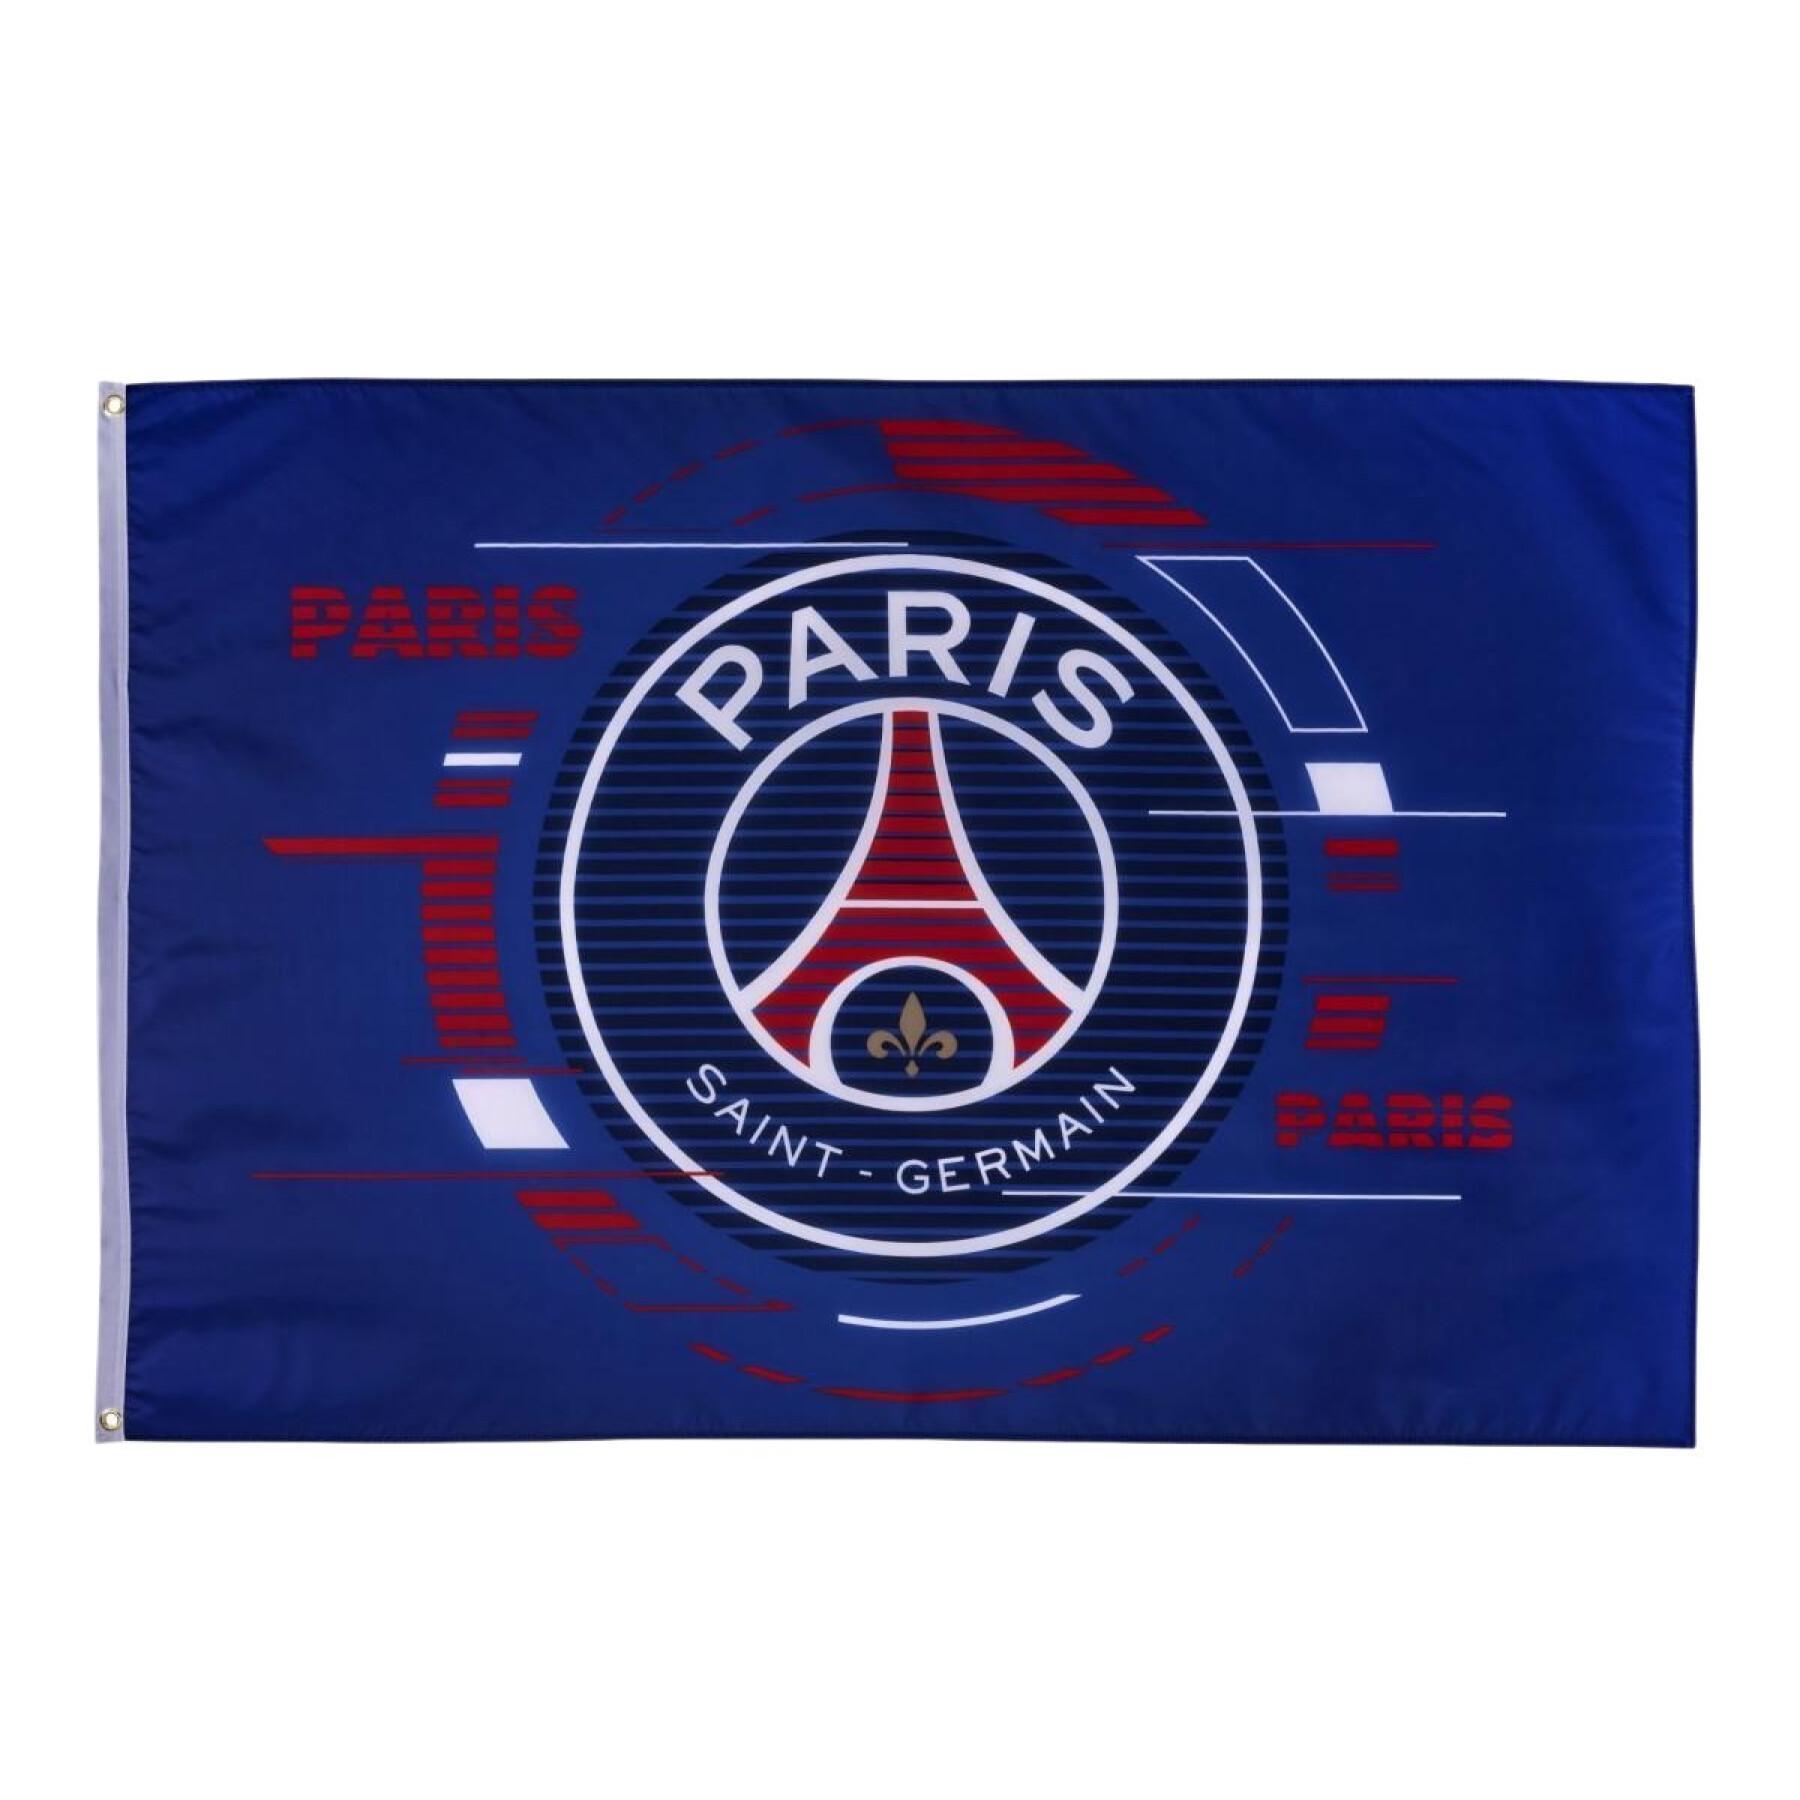 Bandera con logo grande paris saint-germain 2021/22